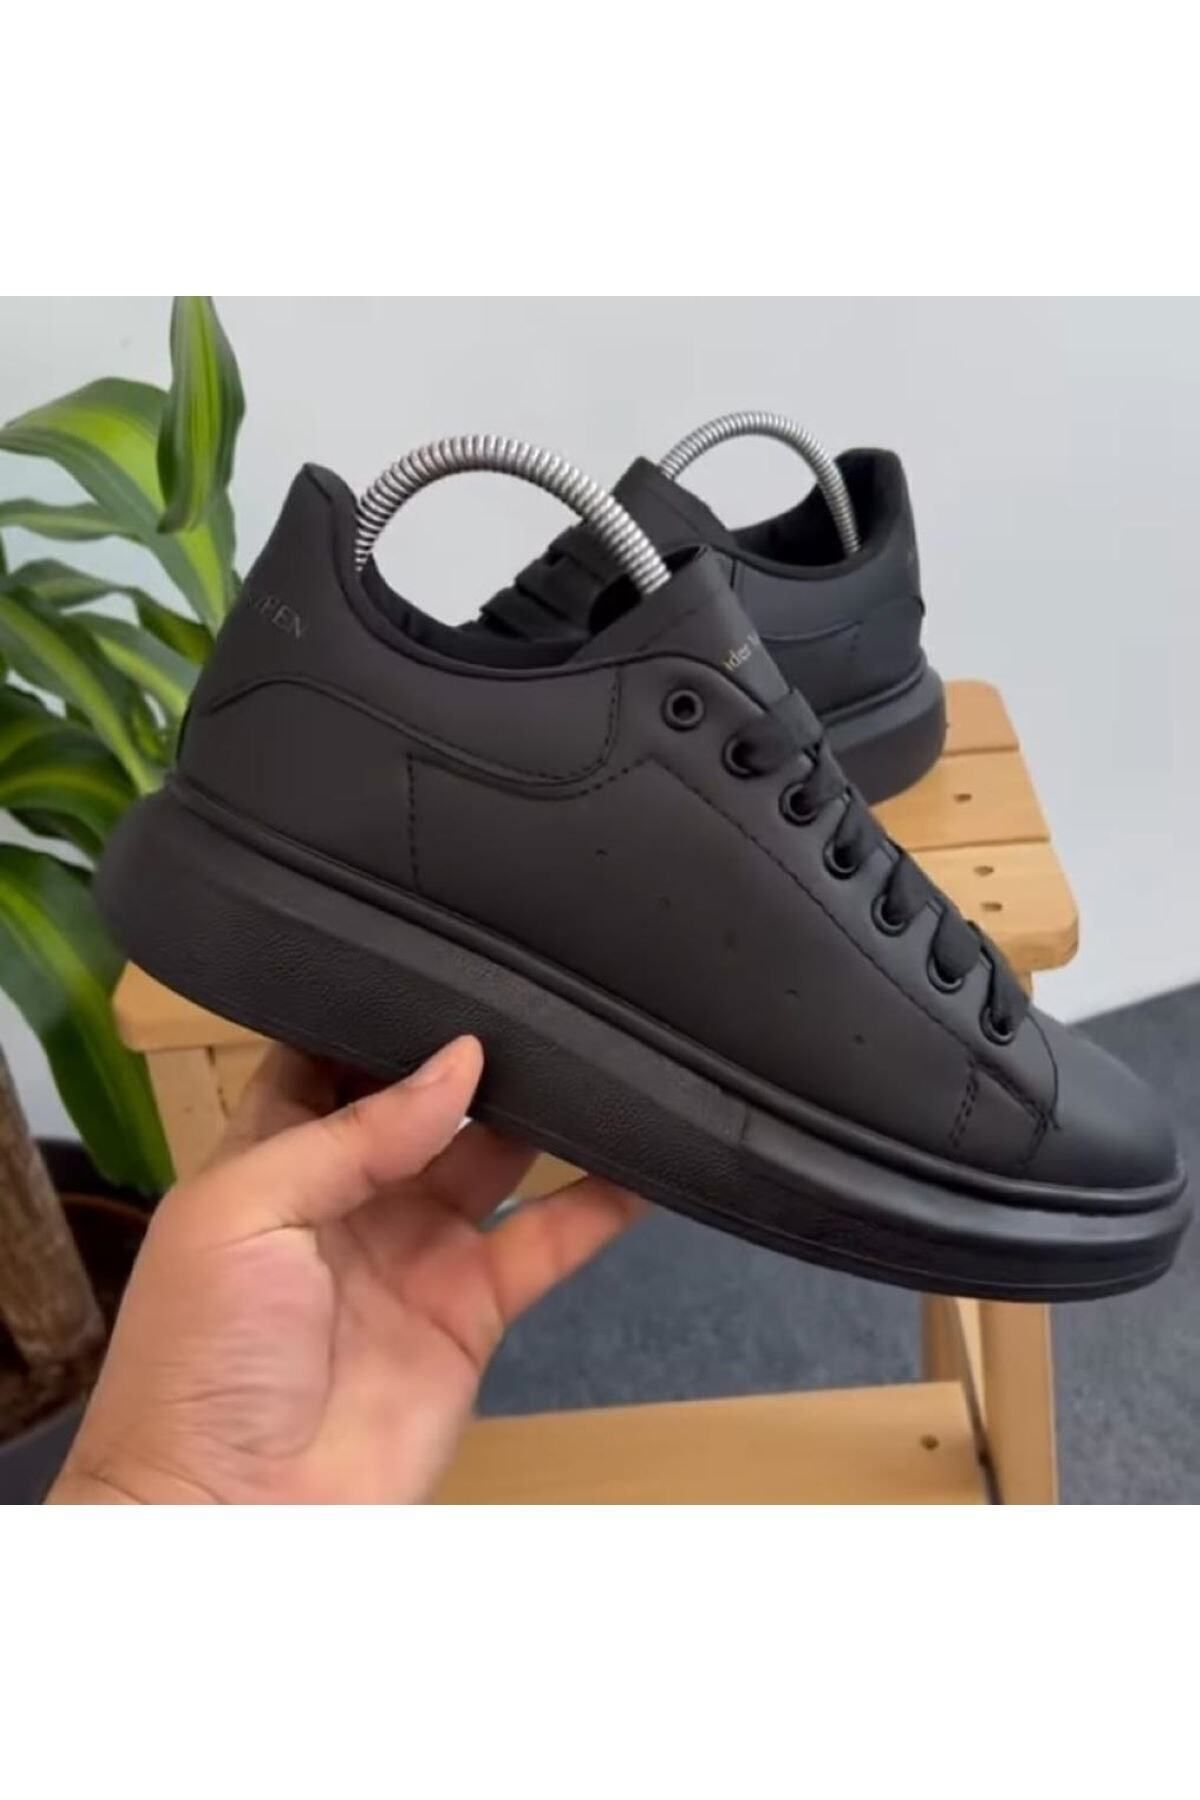 BAY ARMEDON Unisex Siyah Sneaker Günlük Kalın Taban Spor Yürüyüş Ayakkabı